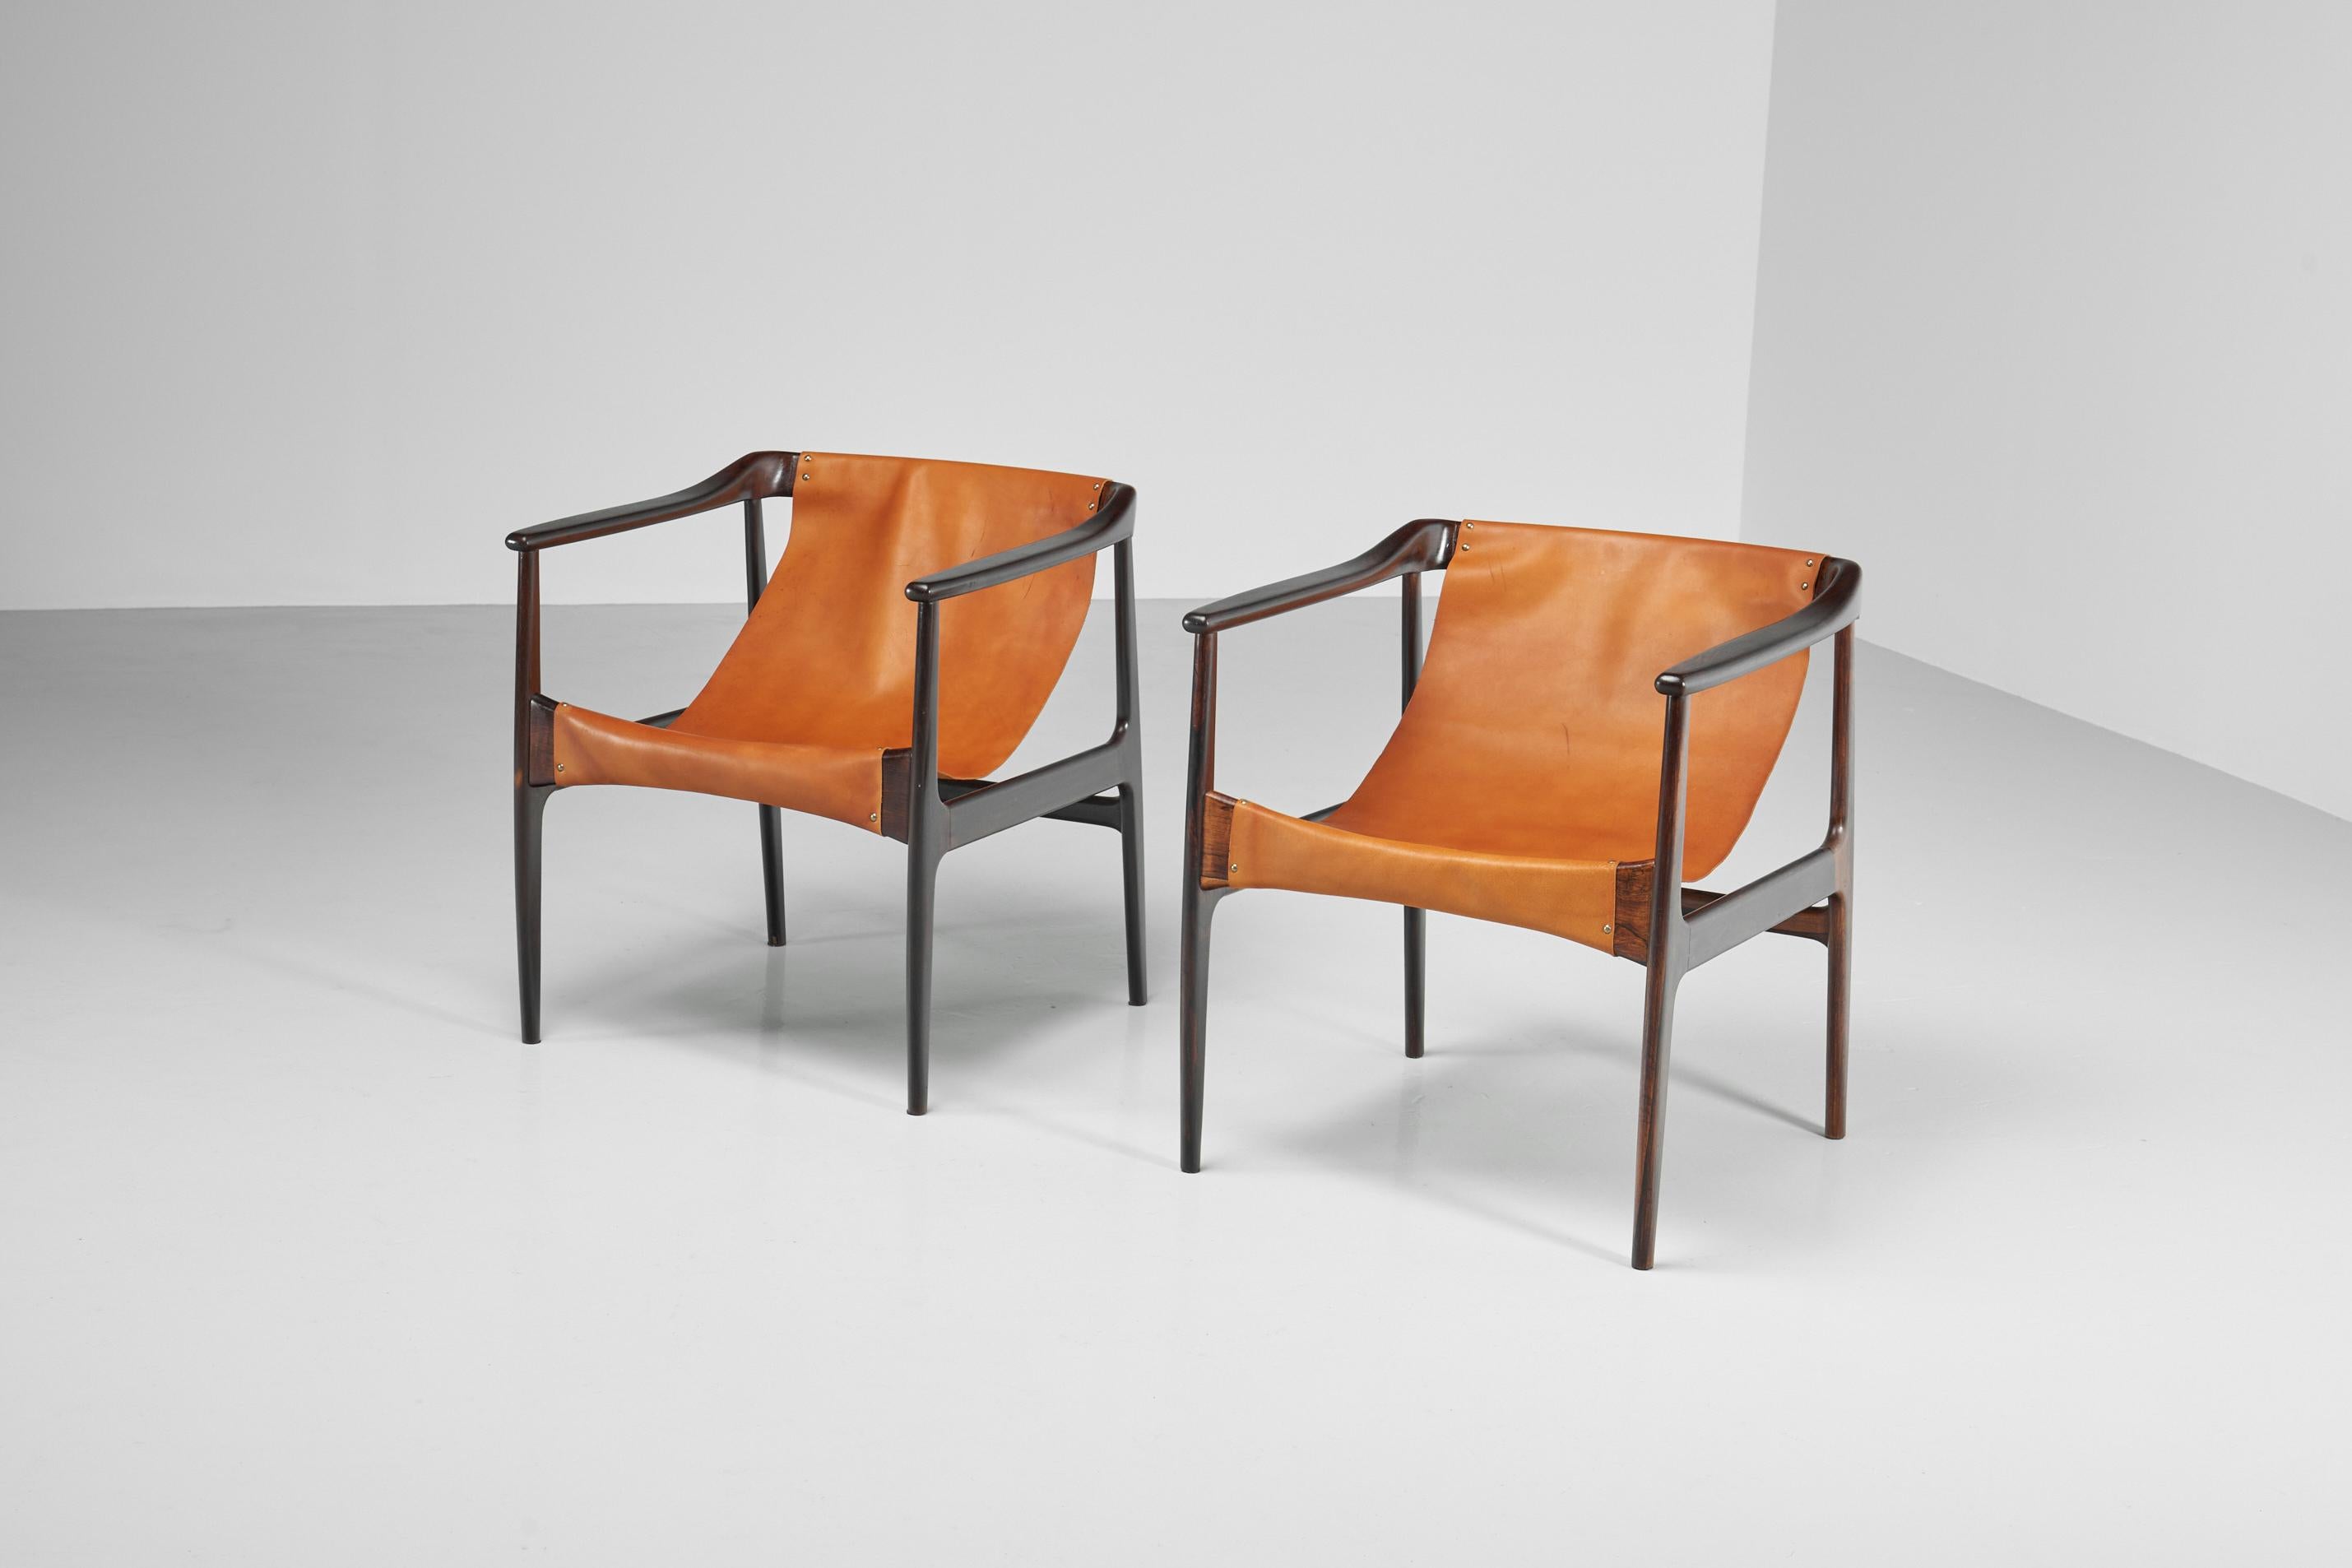 Auffallendes Paar Sessel, entworfen und hergestellt von Lice de Artes e Oficios, Brasilien 1960. Diese Loungesessel von Liceu de Artes e Officios haben eine schöne Patina und sind in einem sehr guten, restaurierten Zustand, es sind keine